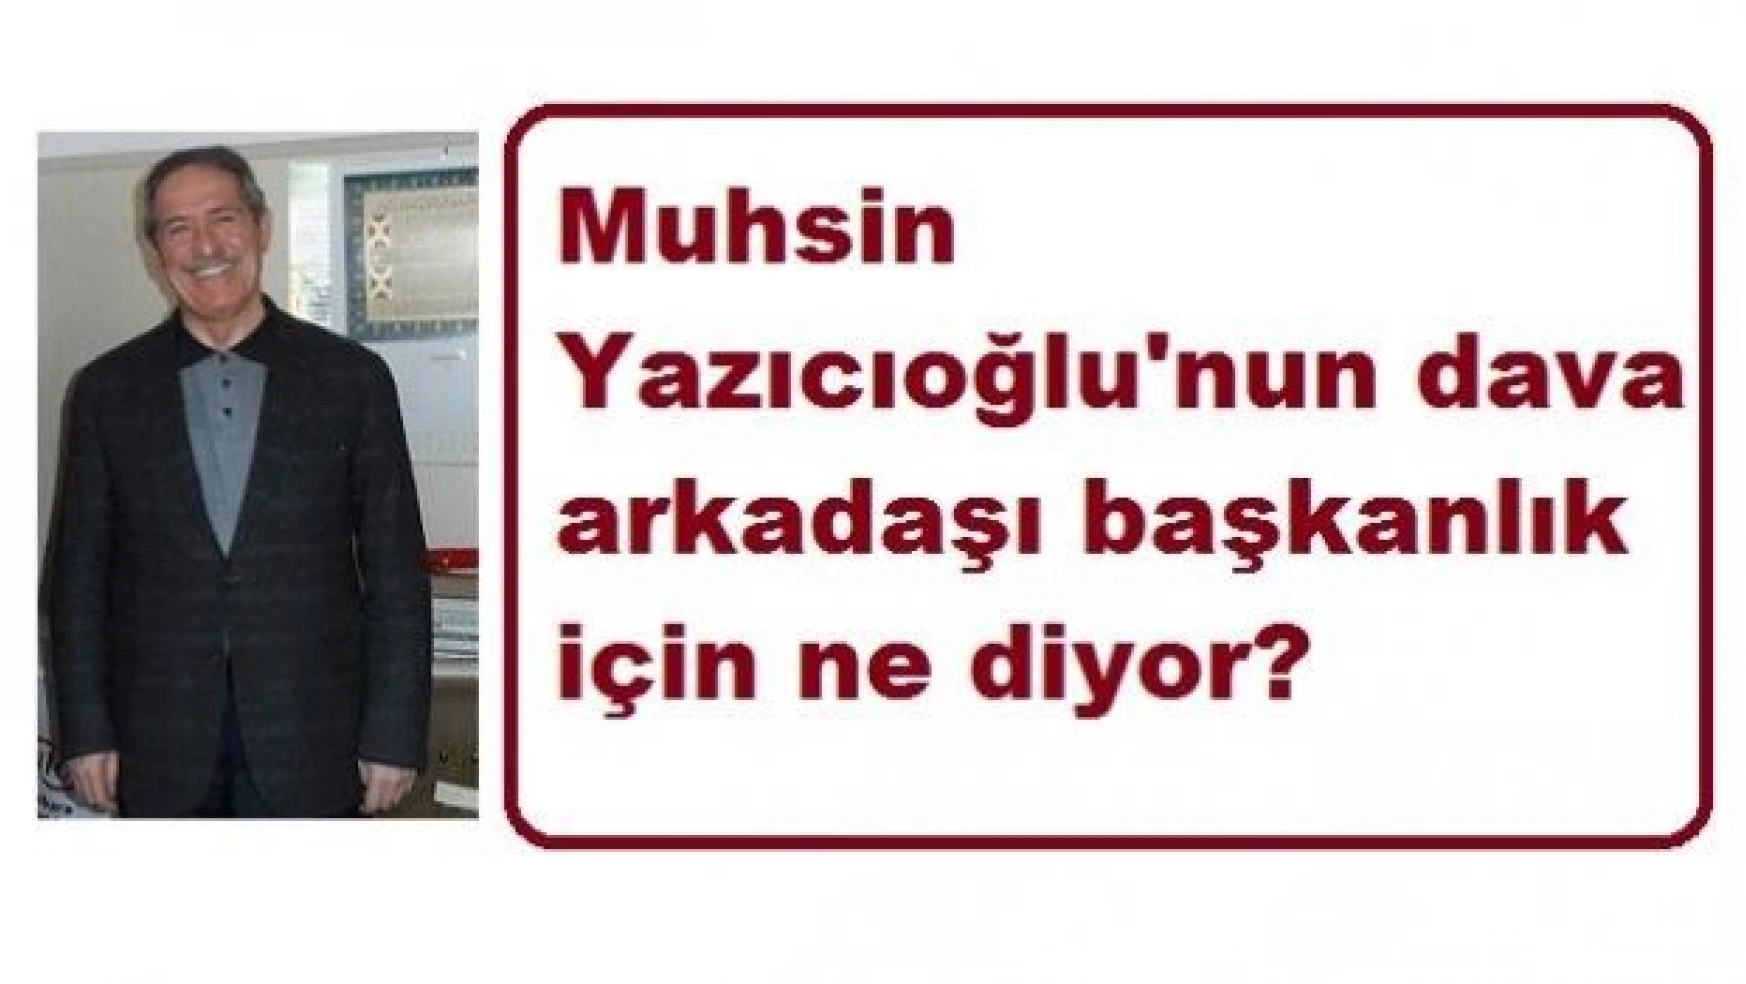 Muhsin Yazıcoğlu'nun dava arkadaşı Prof. Kavuncu 'başkanlık' için ne diyor?